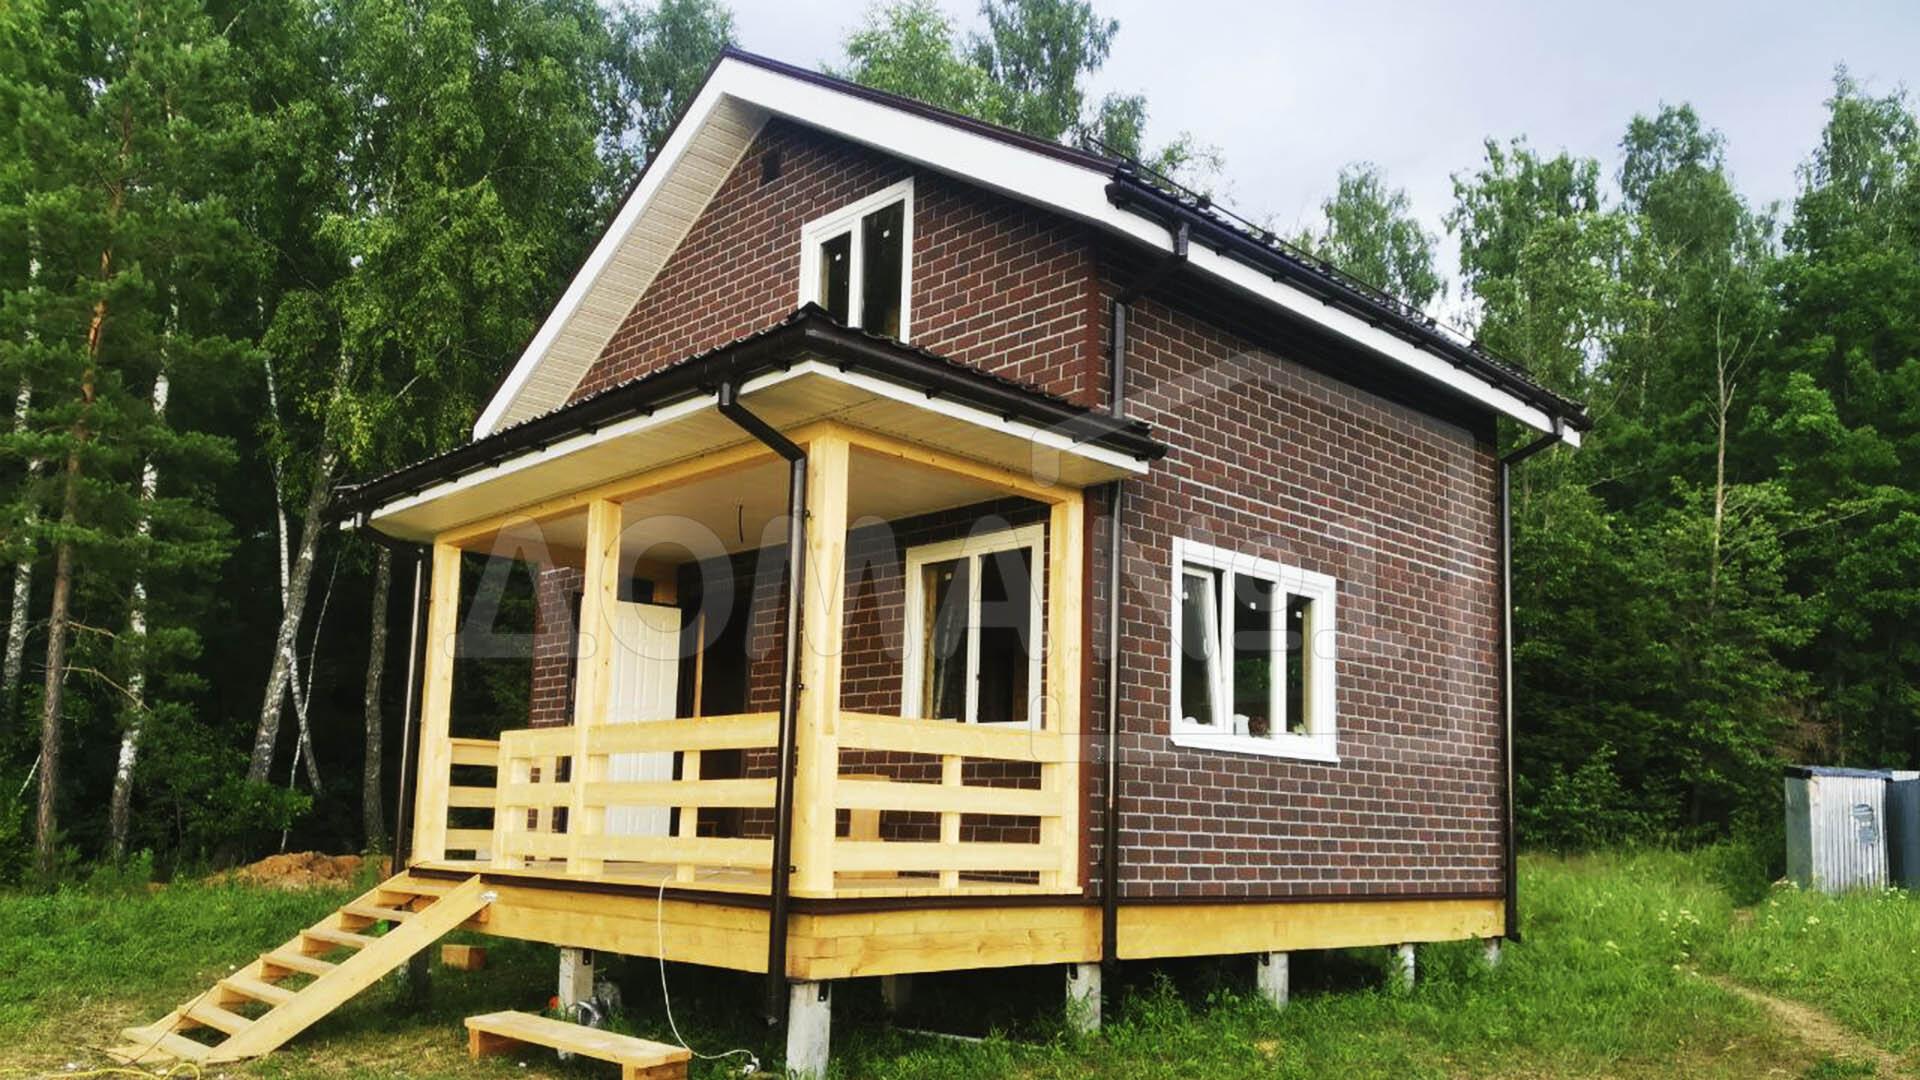 Строительство деревянного дома самойлов